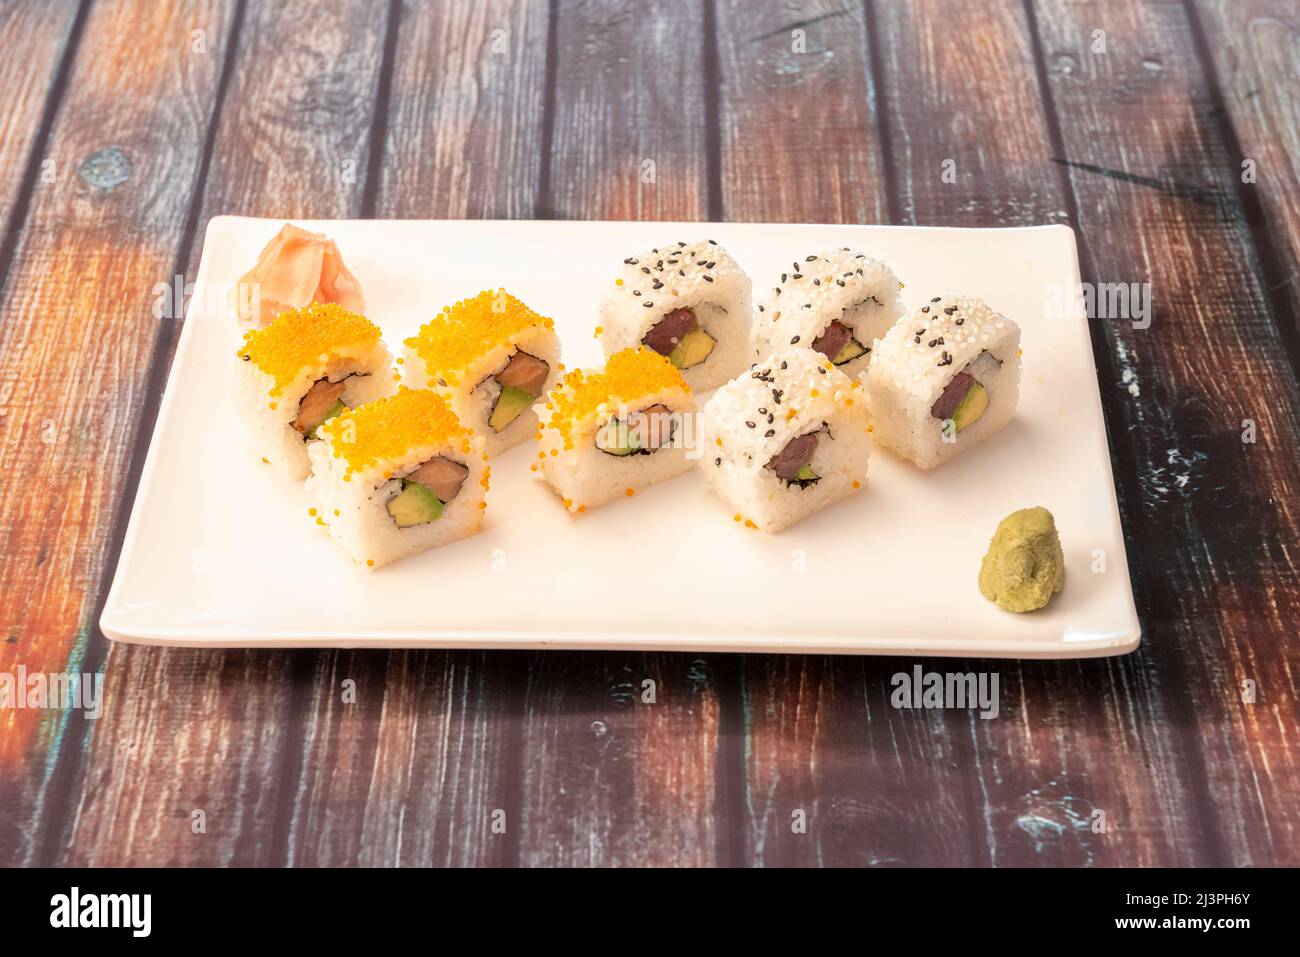 Assortiment de sushis ruramaki california roll avec œufs de macago, thon rouge, saumon norvégien, algues nori, fromage à la crème, avocat mûr, wasabi, gingembre et Banque D'Images